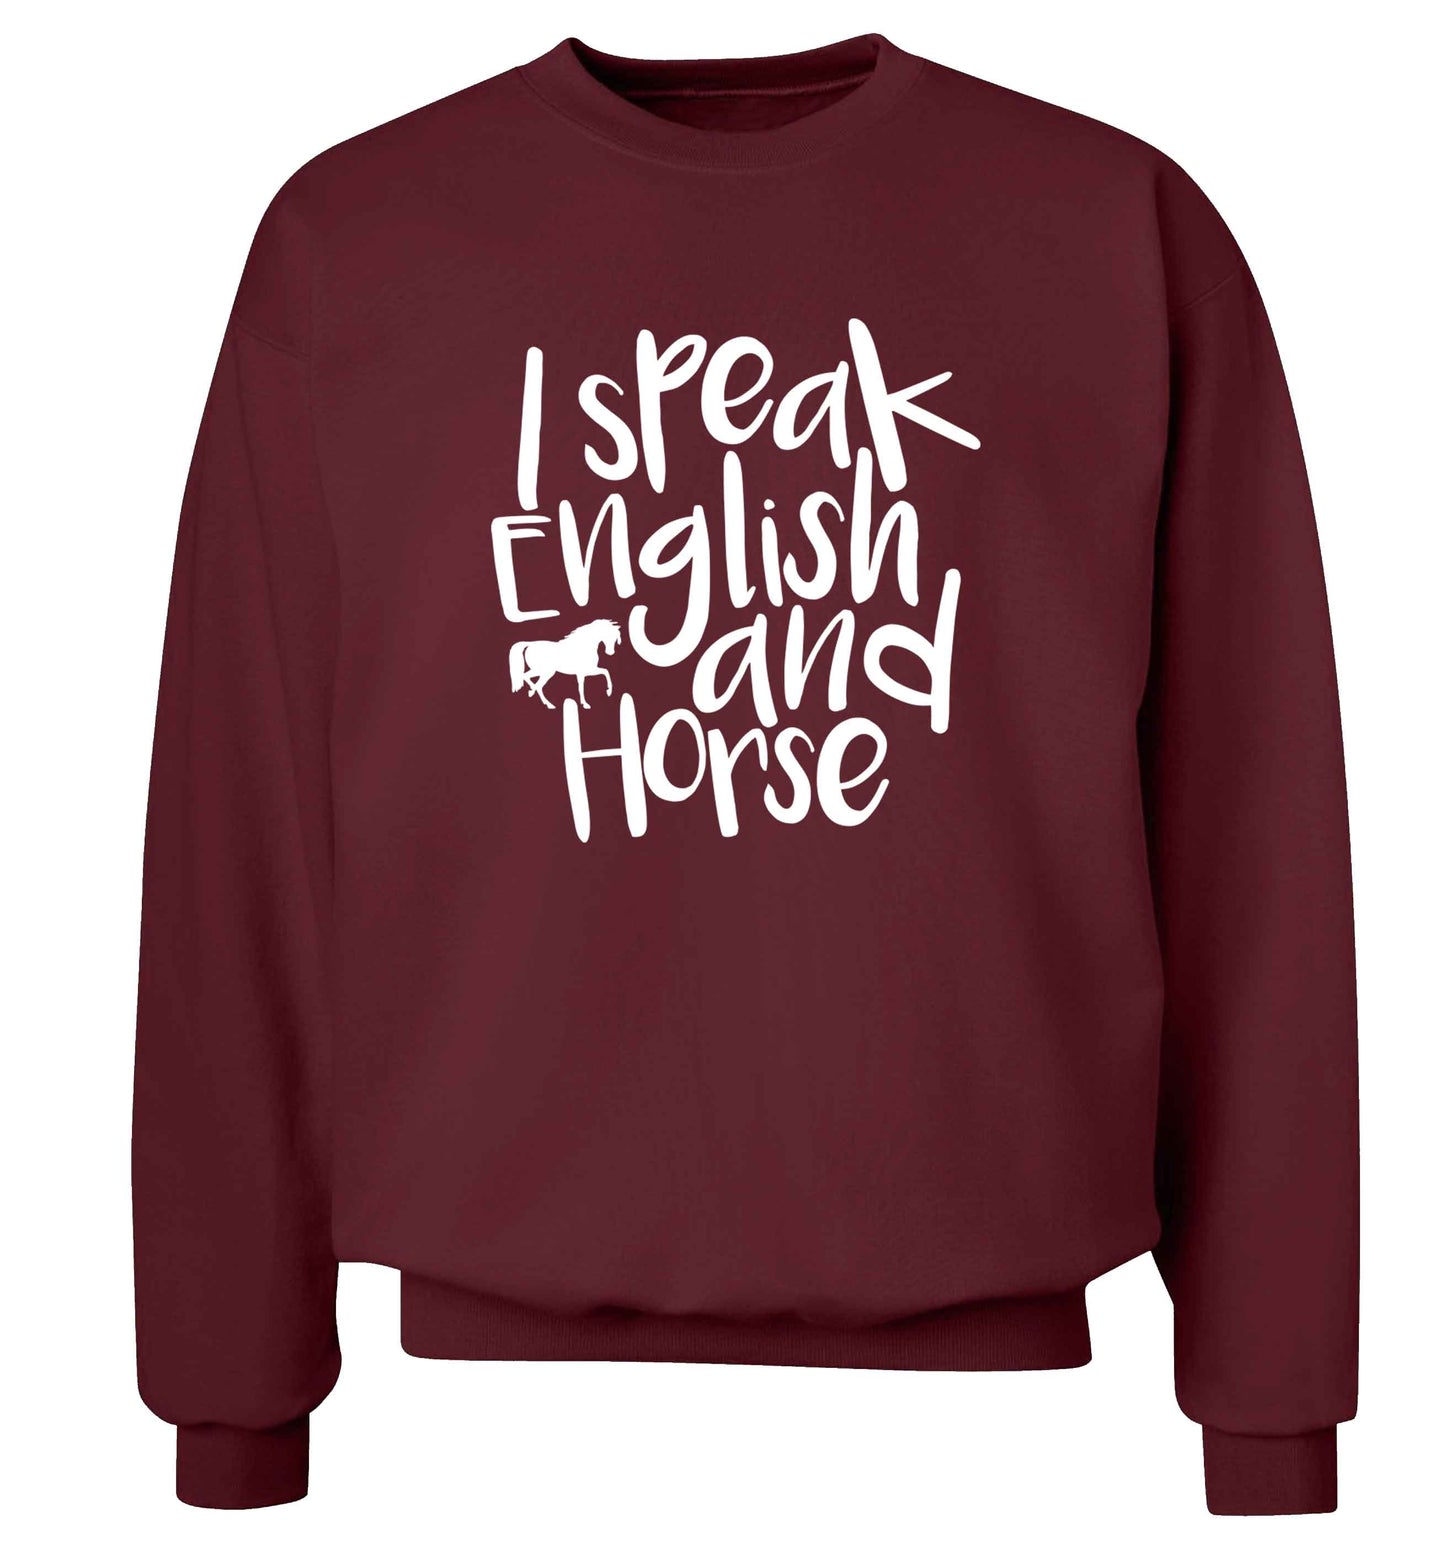 I speak English and horse adult's unisex maroon sweater 2XL